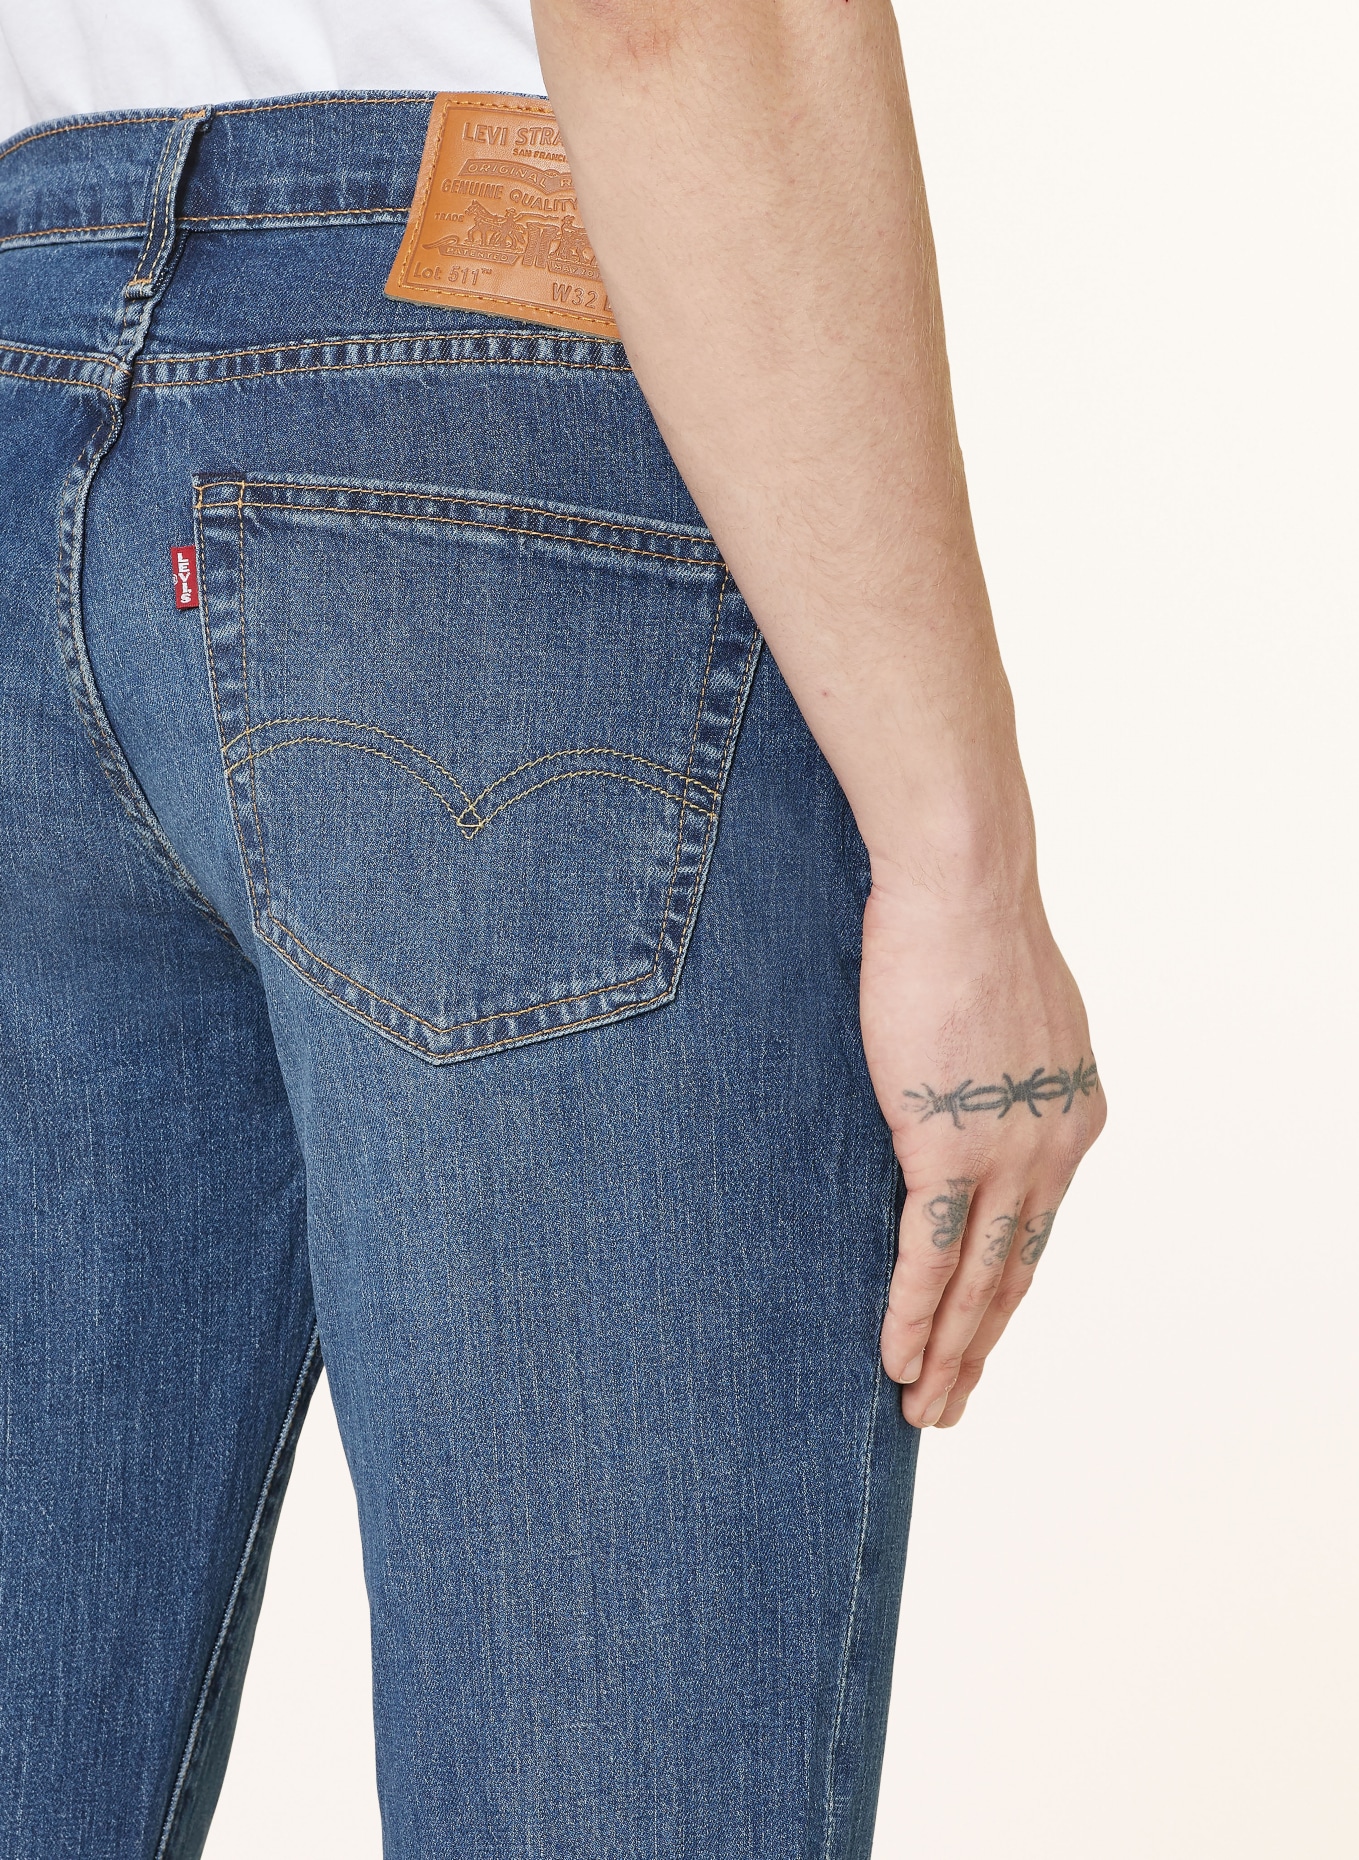 Levi's® Jeans 511 slim fit, Color: 49 Med Indigo - Worn In (Image 5)